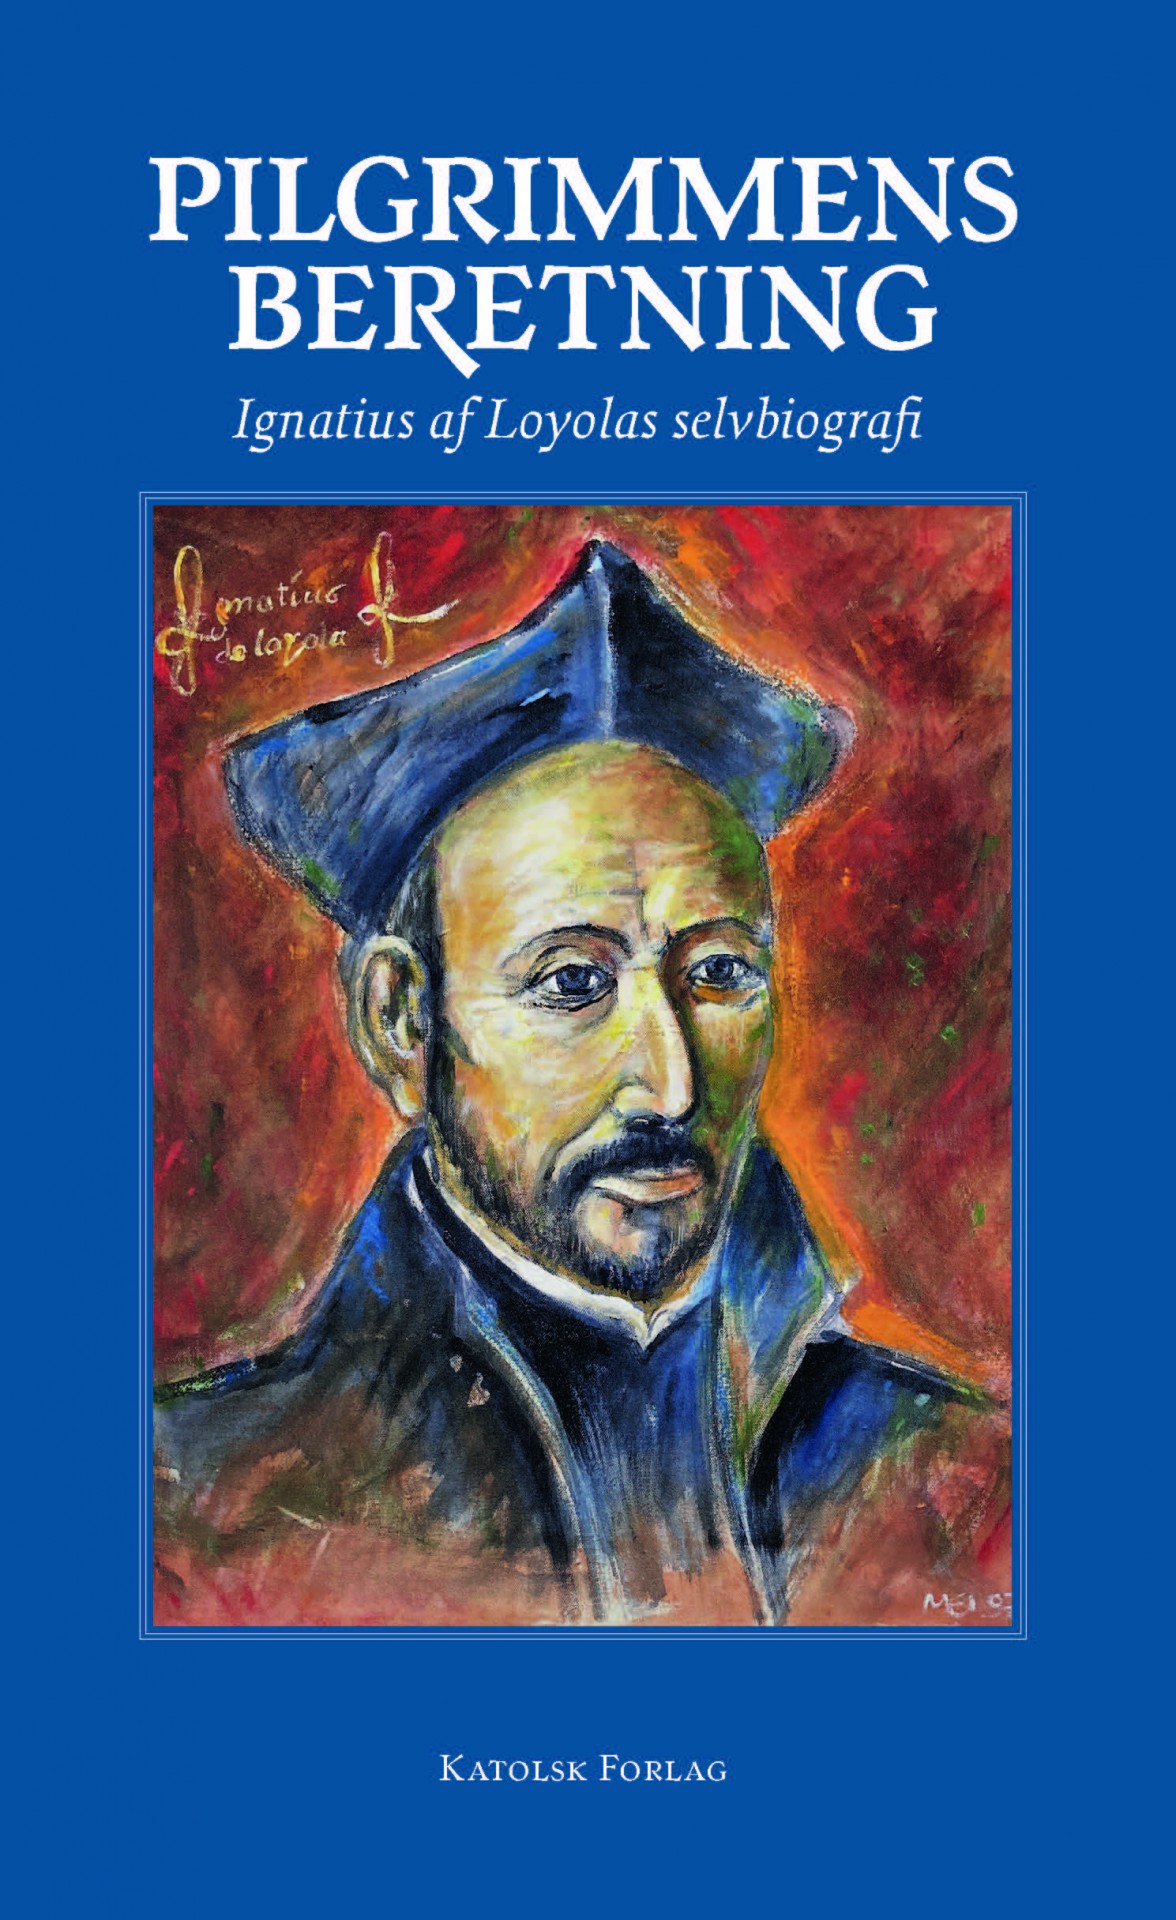 Ignatius af Loyola: Pilgrimmens beretning.